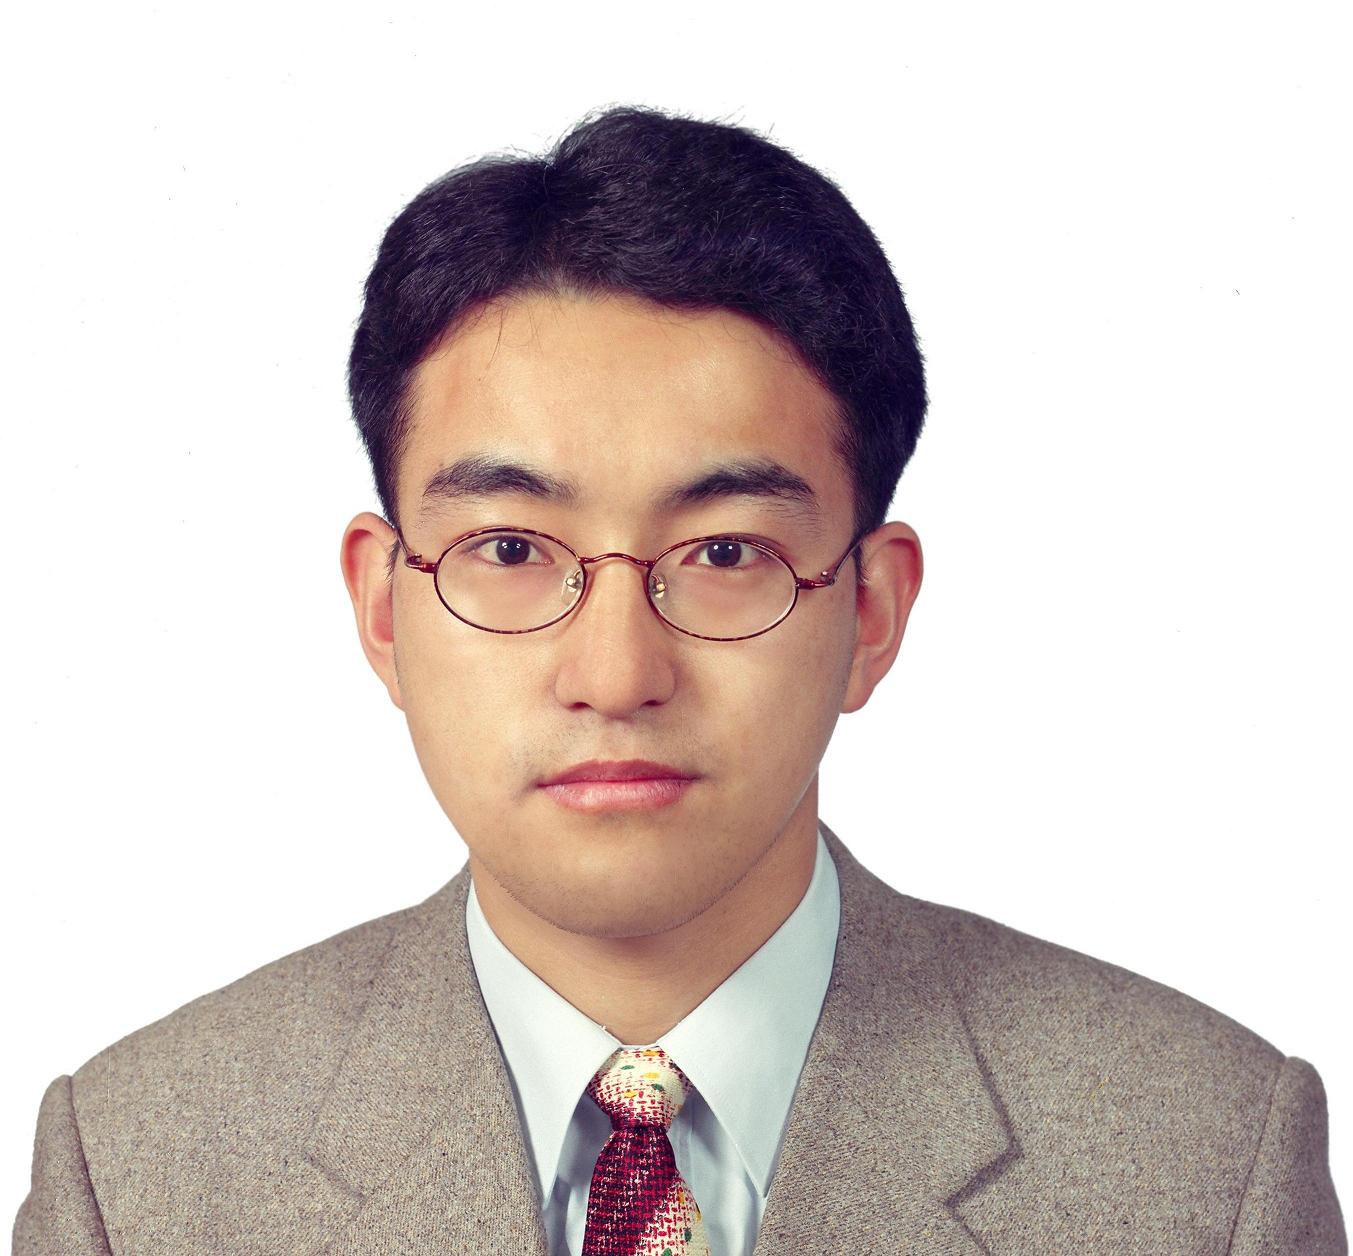 전병욱 교수 사진